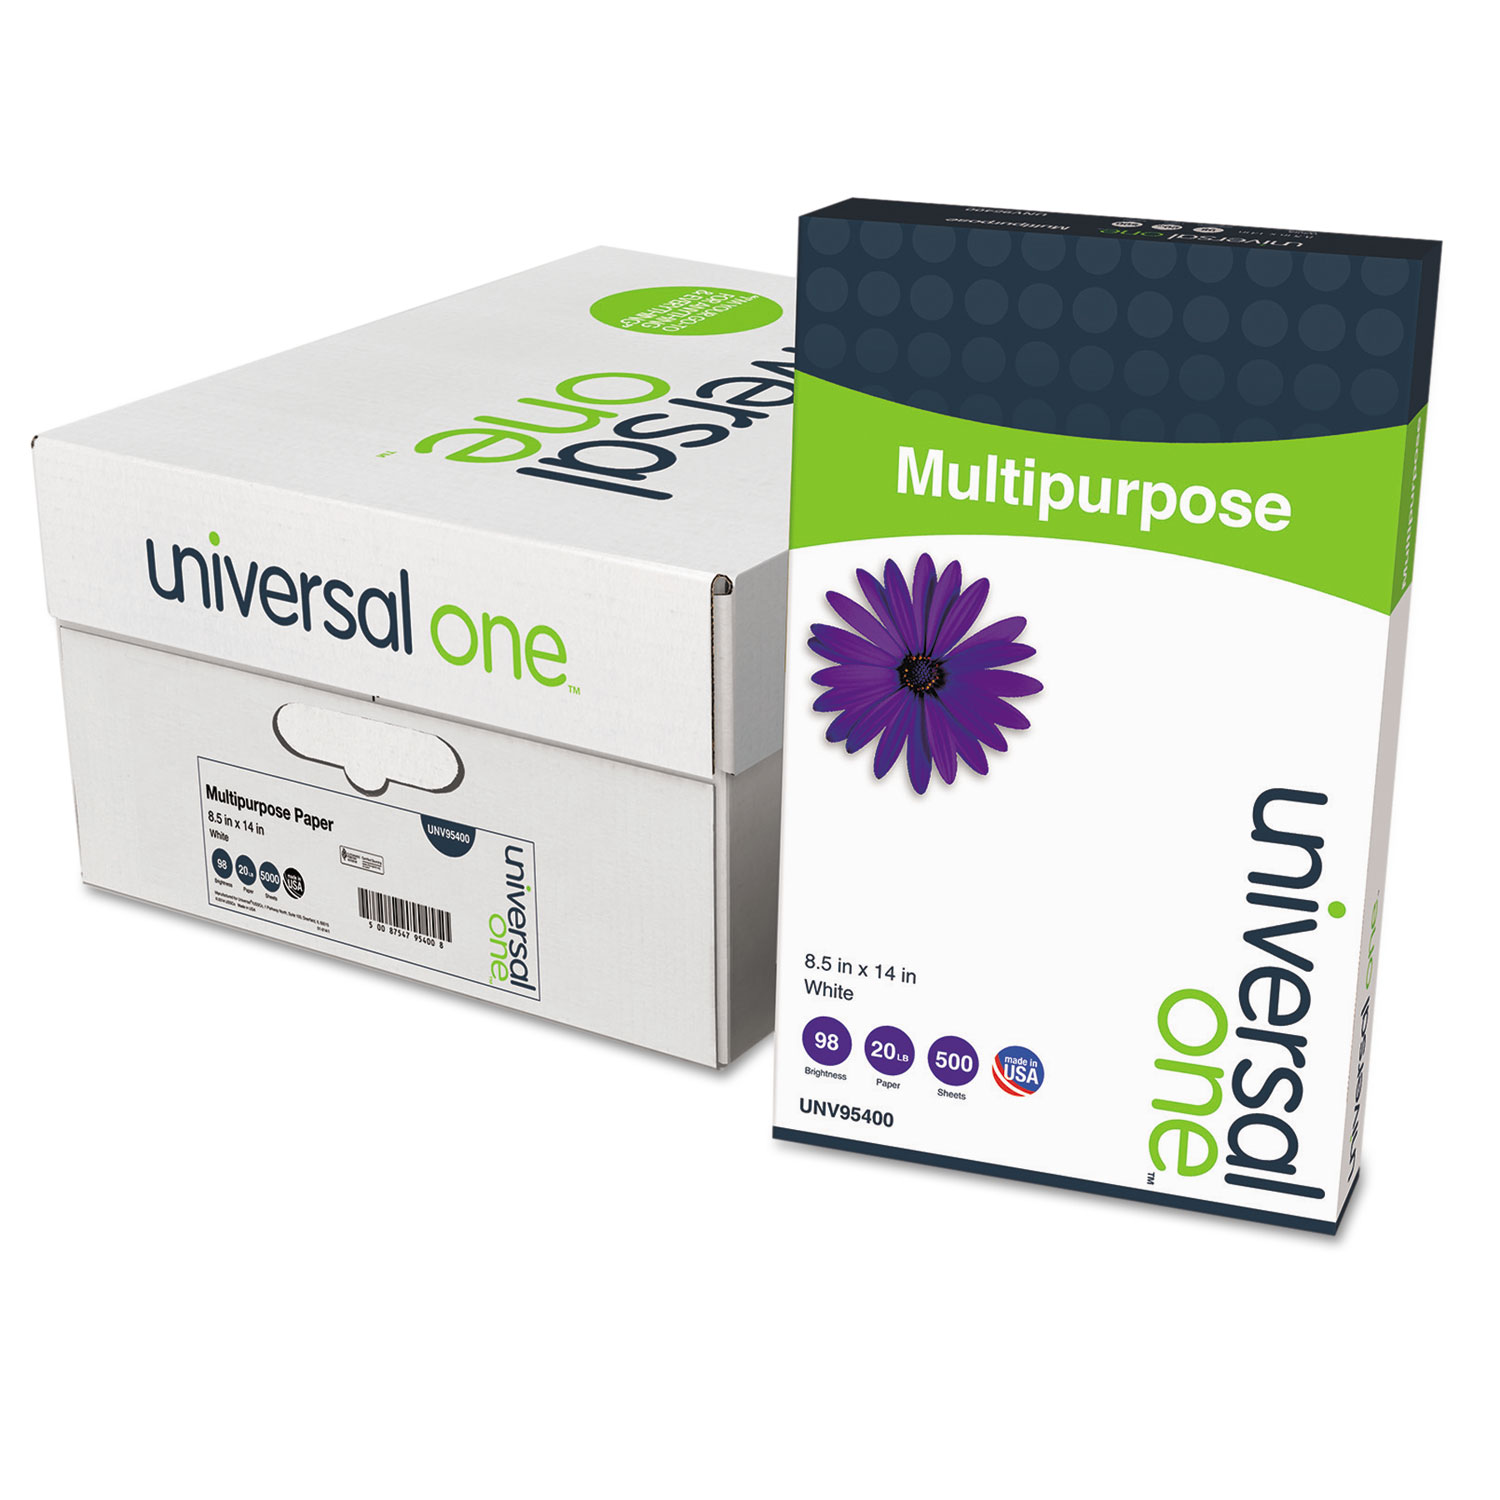  Universal UNV95400 Deluxe Multipurpose Paper, 98 Bright, 20lb, 8.5 x 14, Bright White, 500 Sheets/Ream, 10 Reams/Carton (UNV95400) 